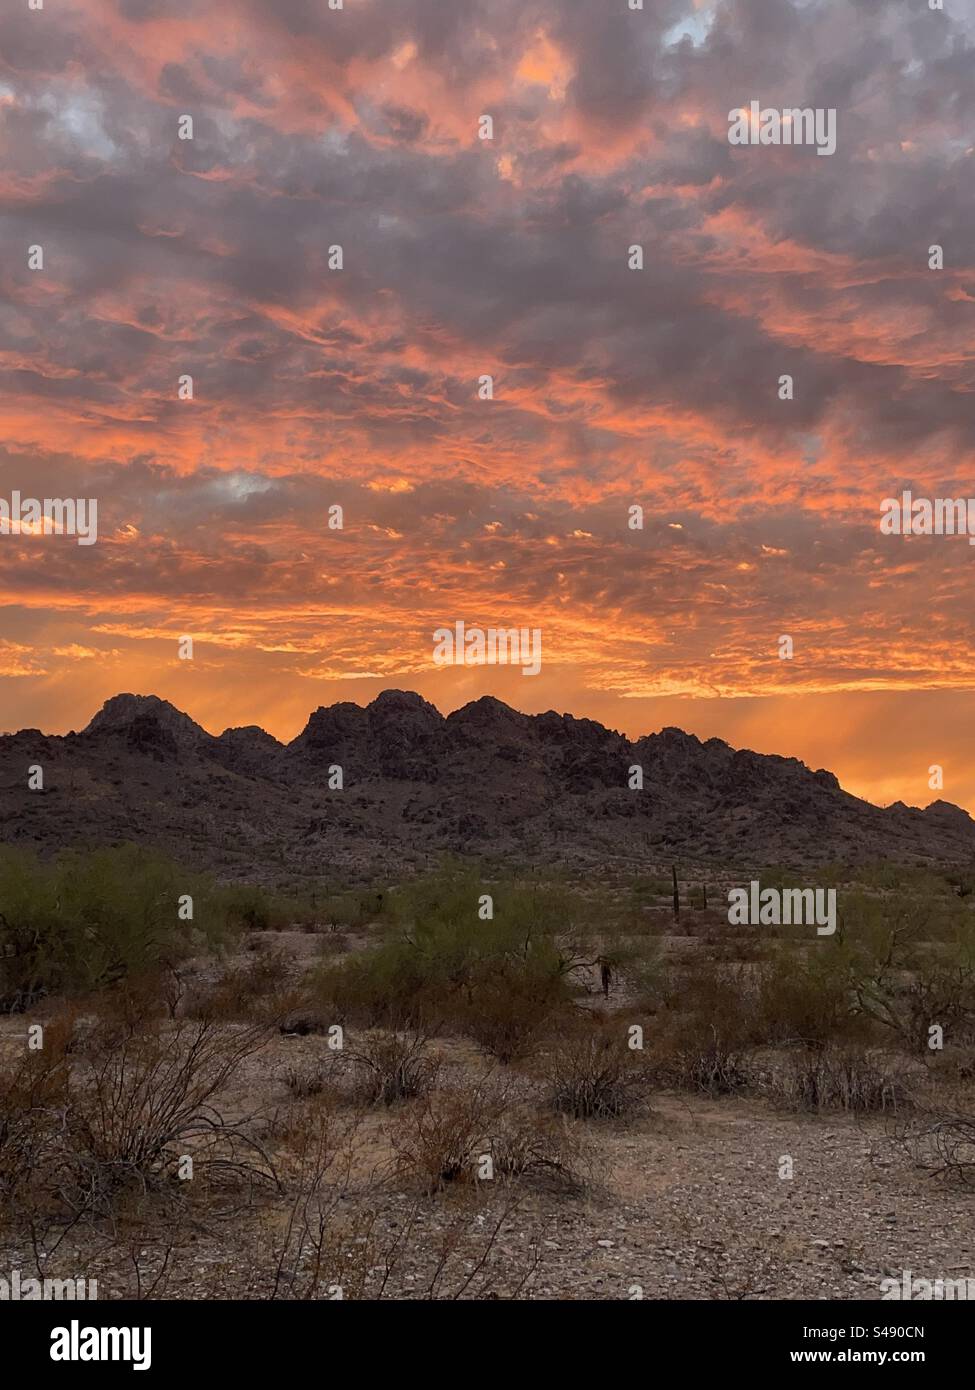 Tirage de rêve, réserve des montagnes Phoenix, coucher de soleil, désert de Sonora, Arizona Banque D'Images